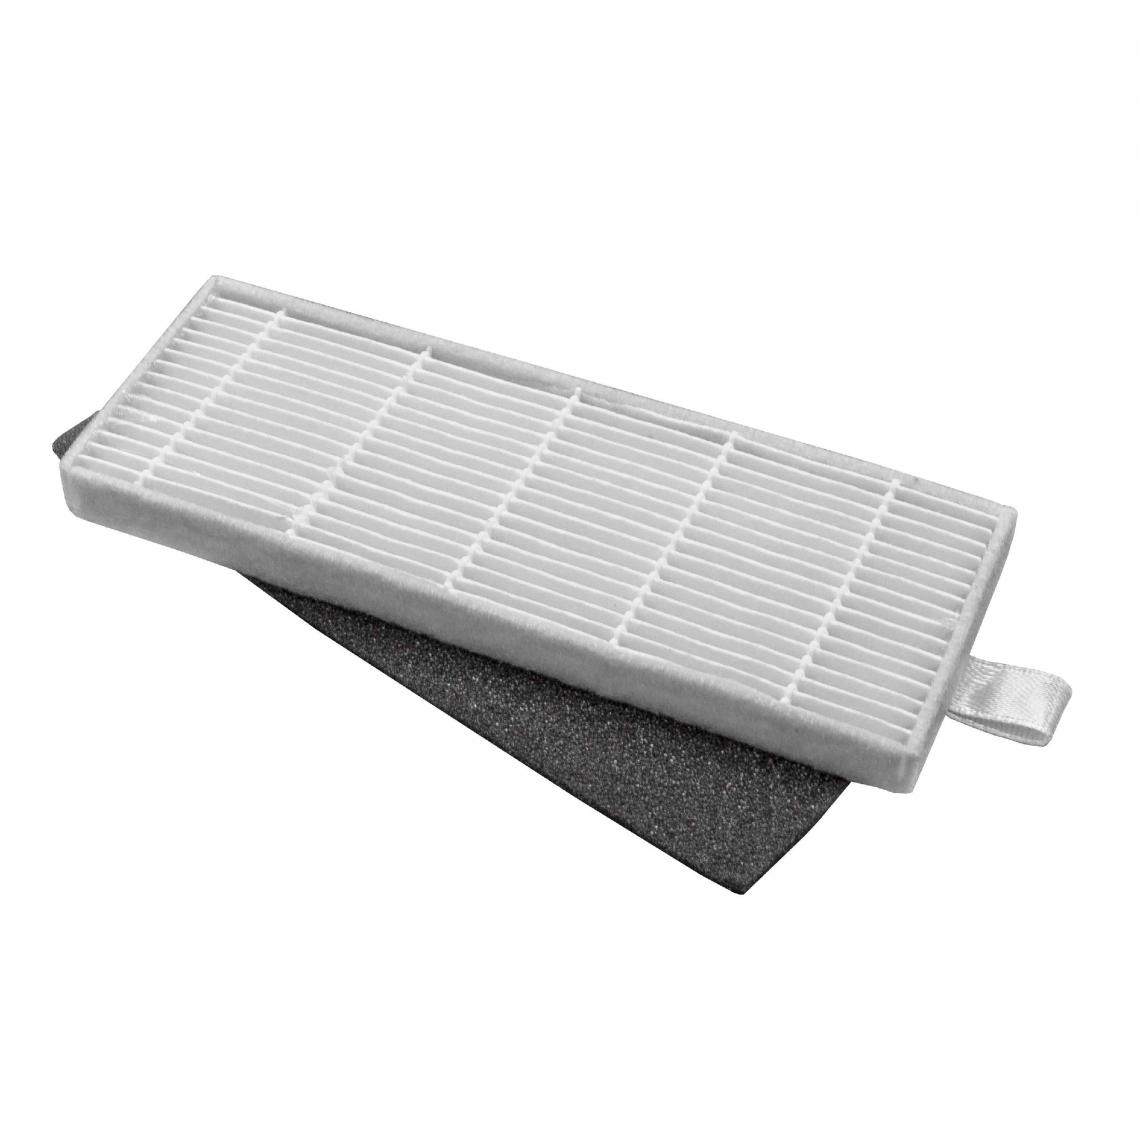 Vhbw - vhbw Lot de filtres compatible avec Zaco A4, A4s, A6, A6s aspirateur-robot - 2x filtres de rechange (filtre HEPA, filtre en mousse) - Accessoire entretien des sols